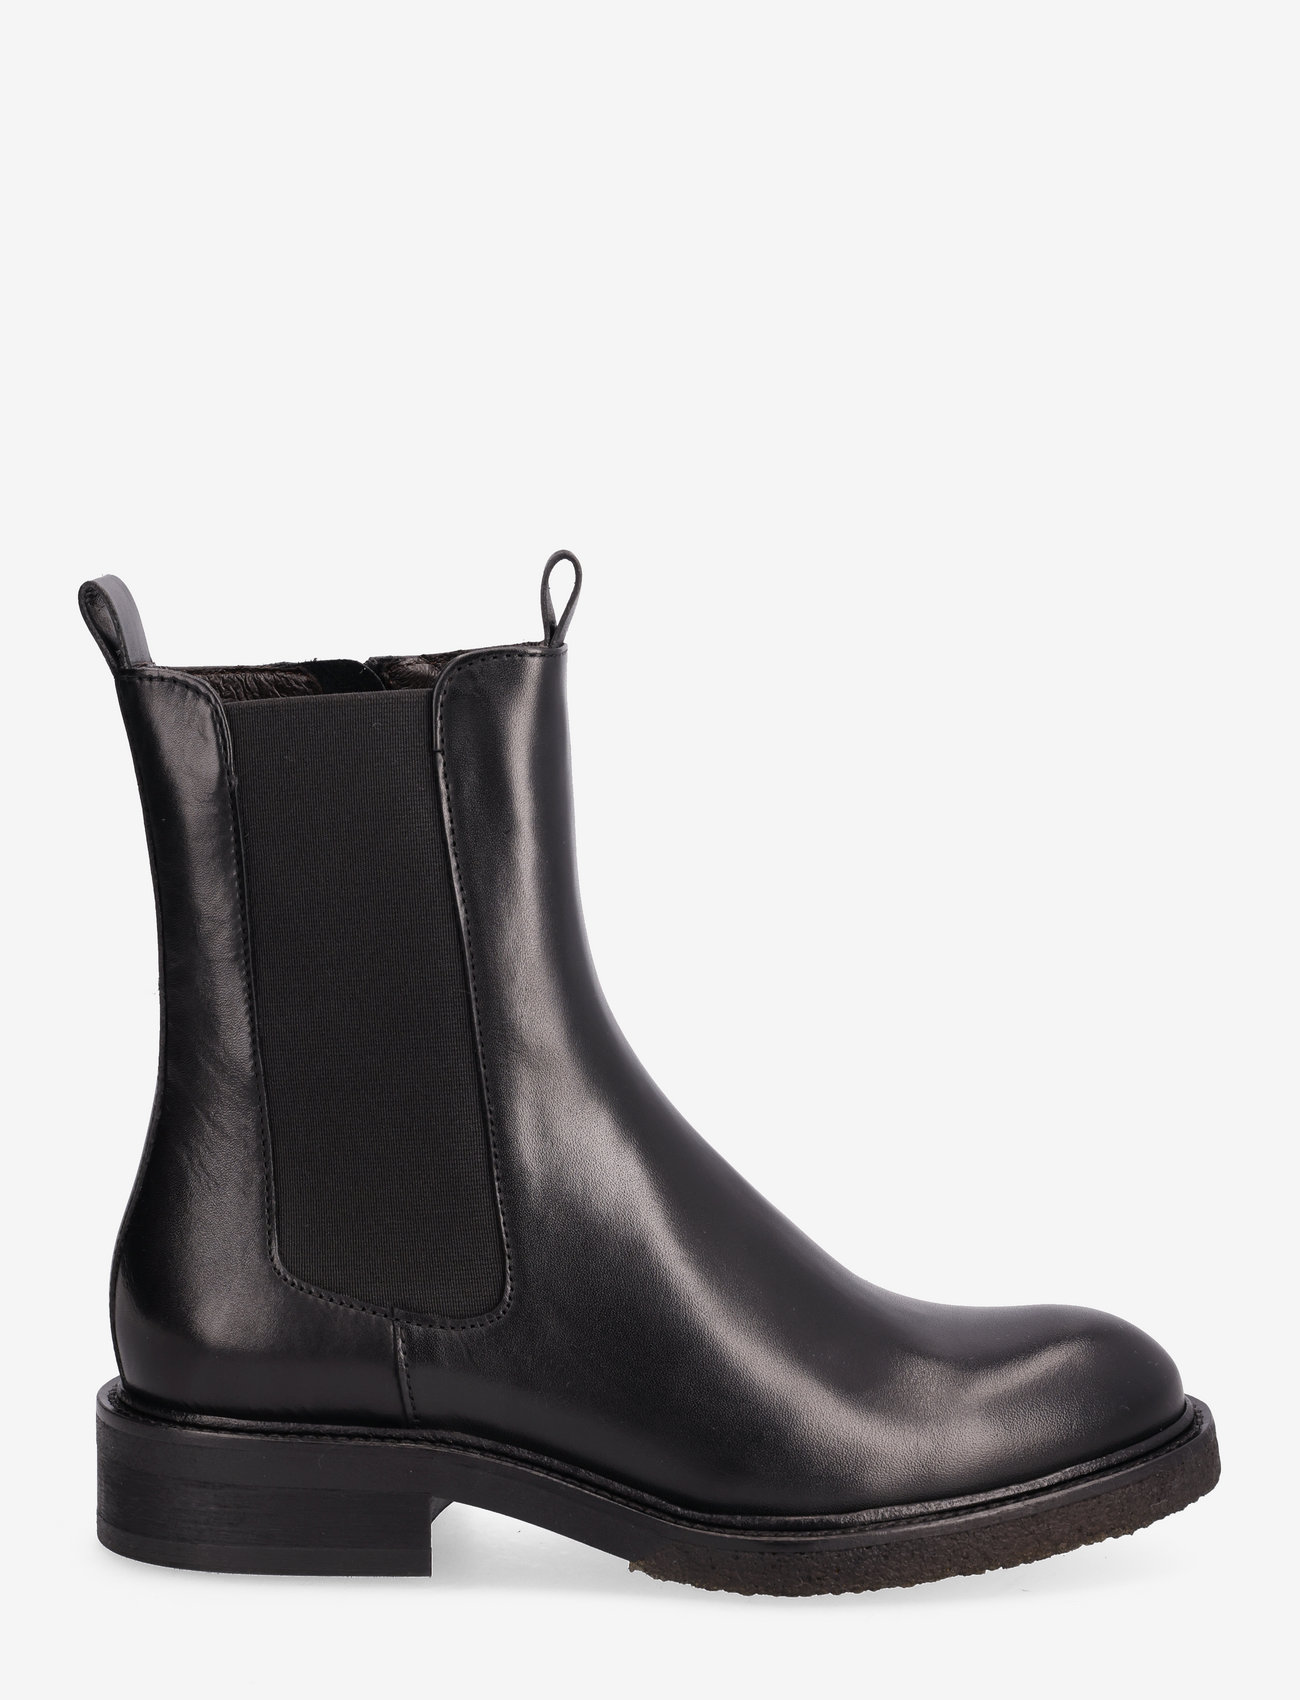 Billi Bi - Boots - chelsea boots - black calf 80 - 1